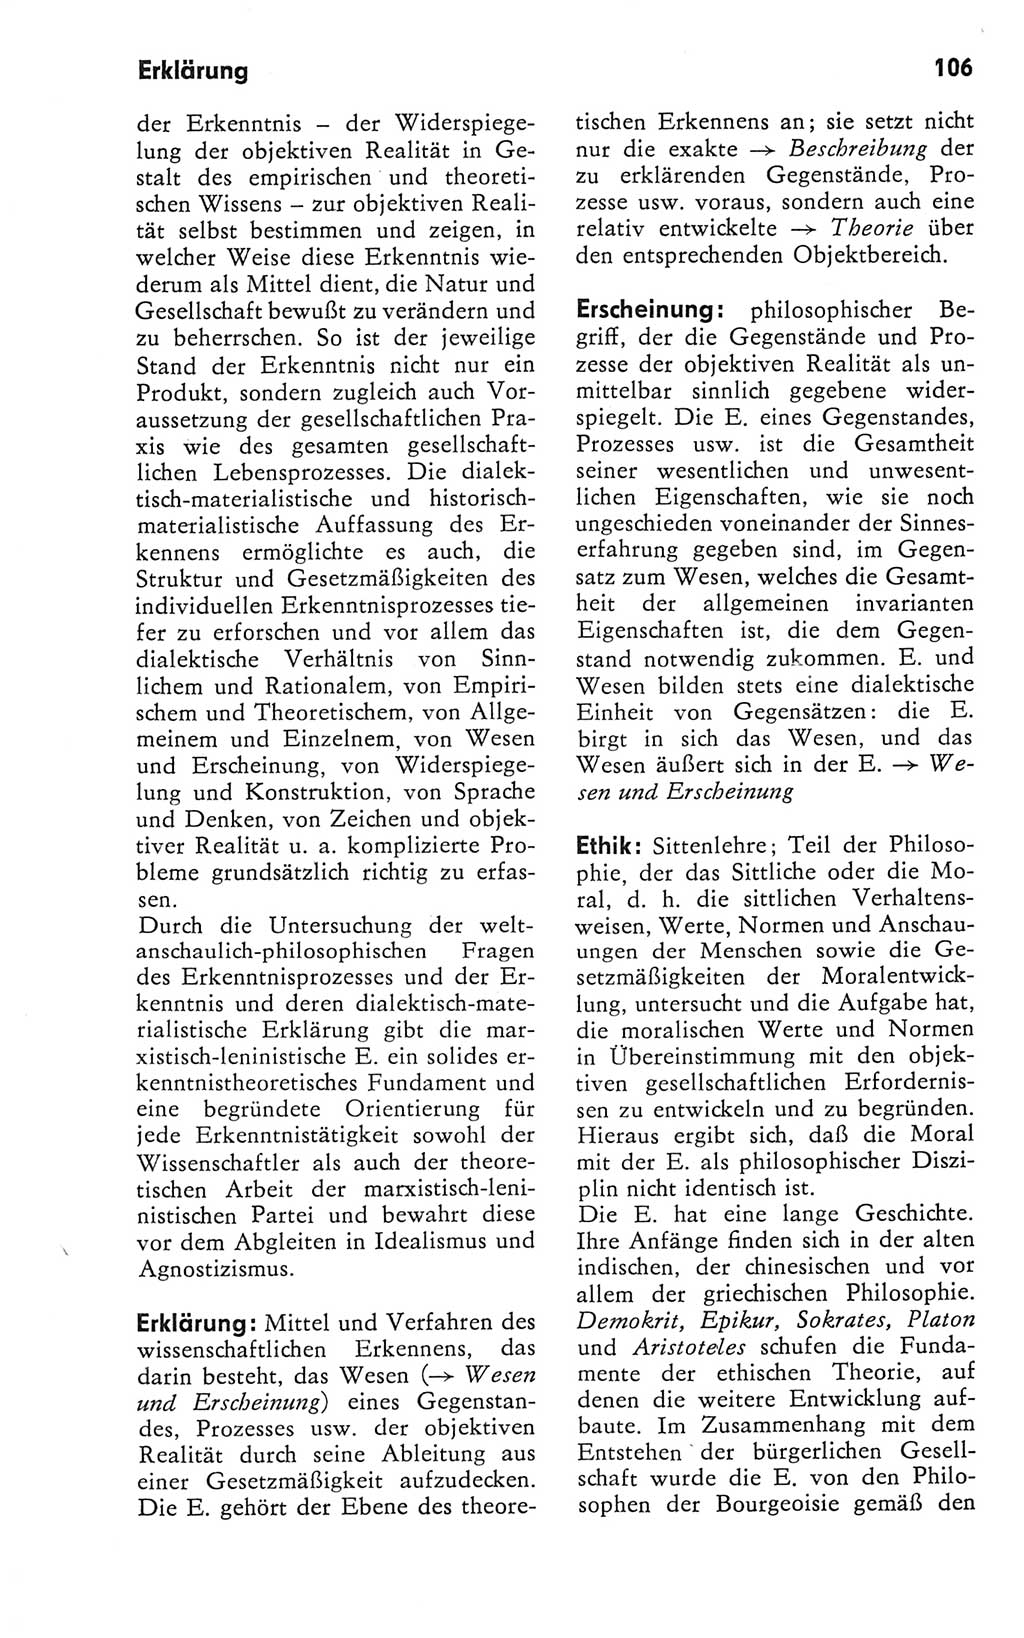 Kleines Wörterbuch der marxistisch-leninistischen Philosophie [Deutsche Demokratische Republik (DDR)] 1981, Seite 106 (Kl. Wb. ML Phil. DDR 1981, S. 106)